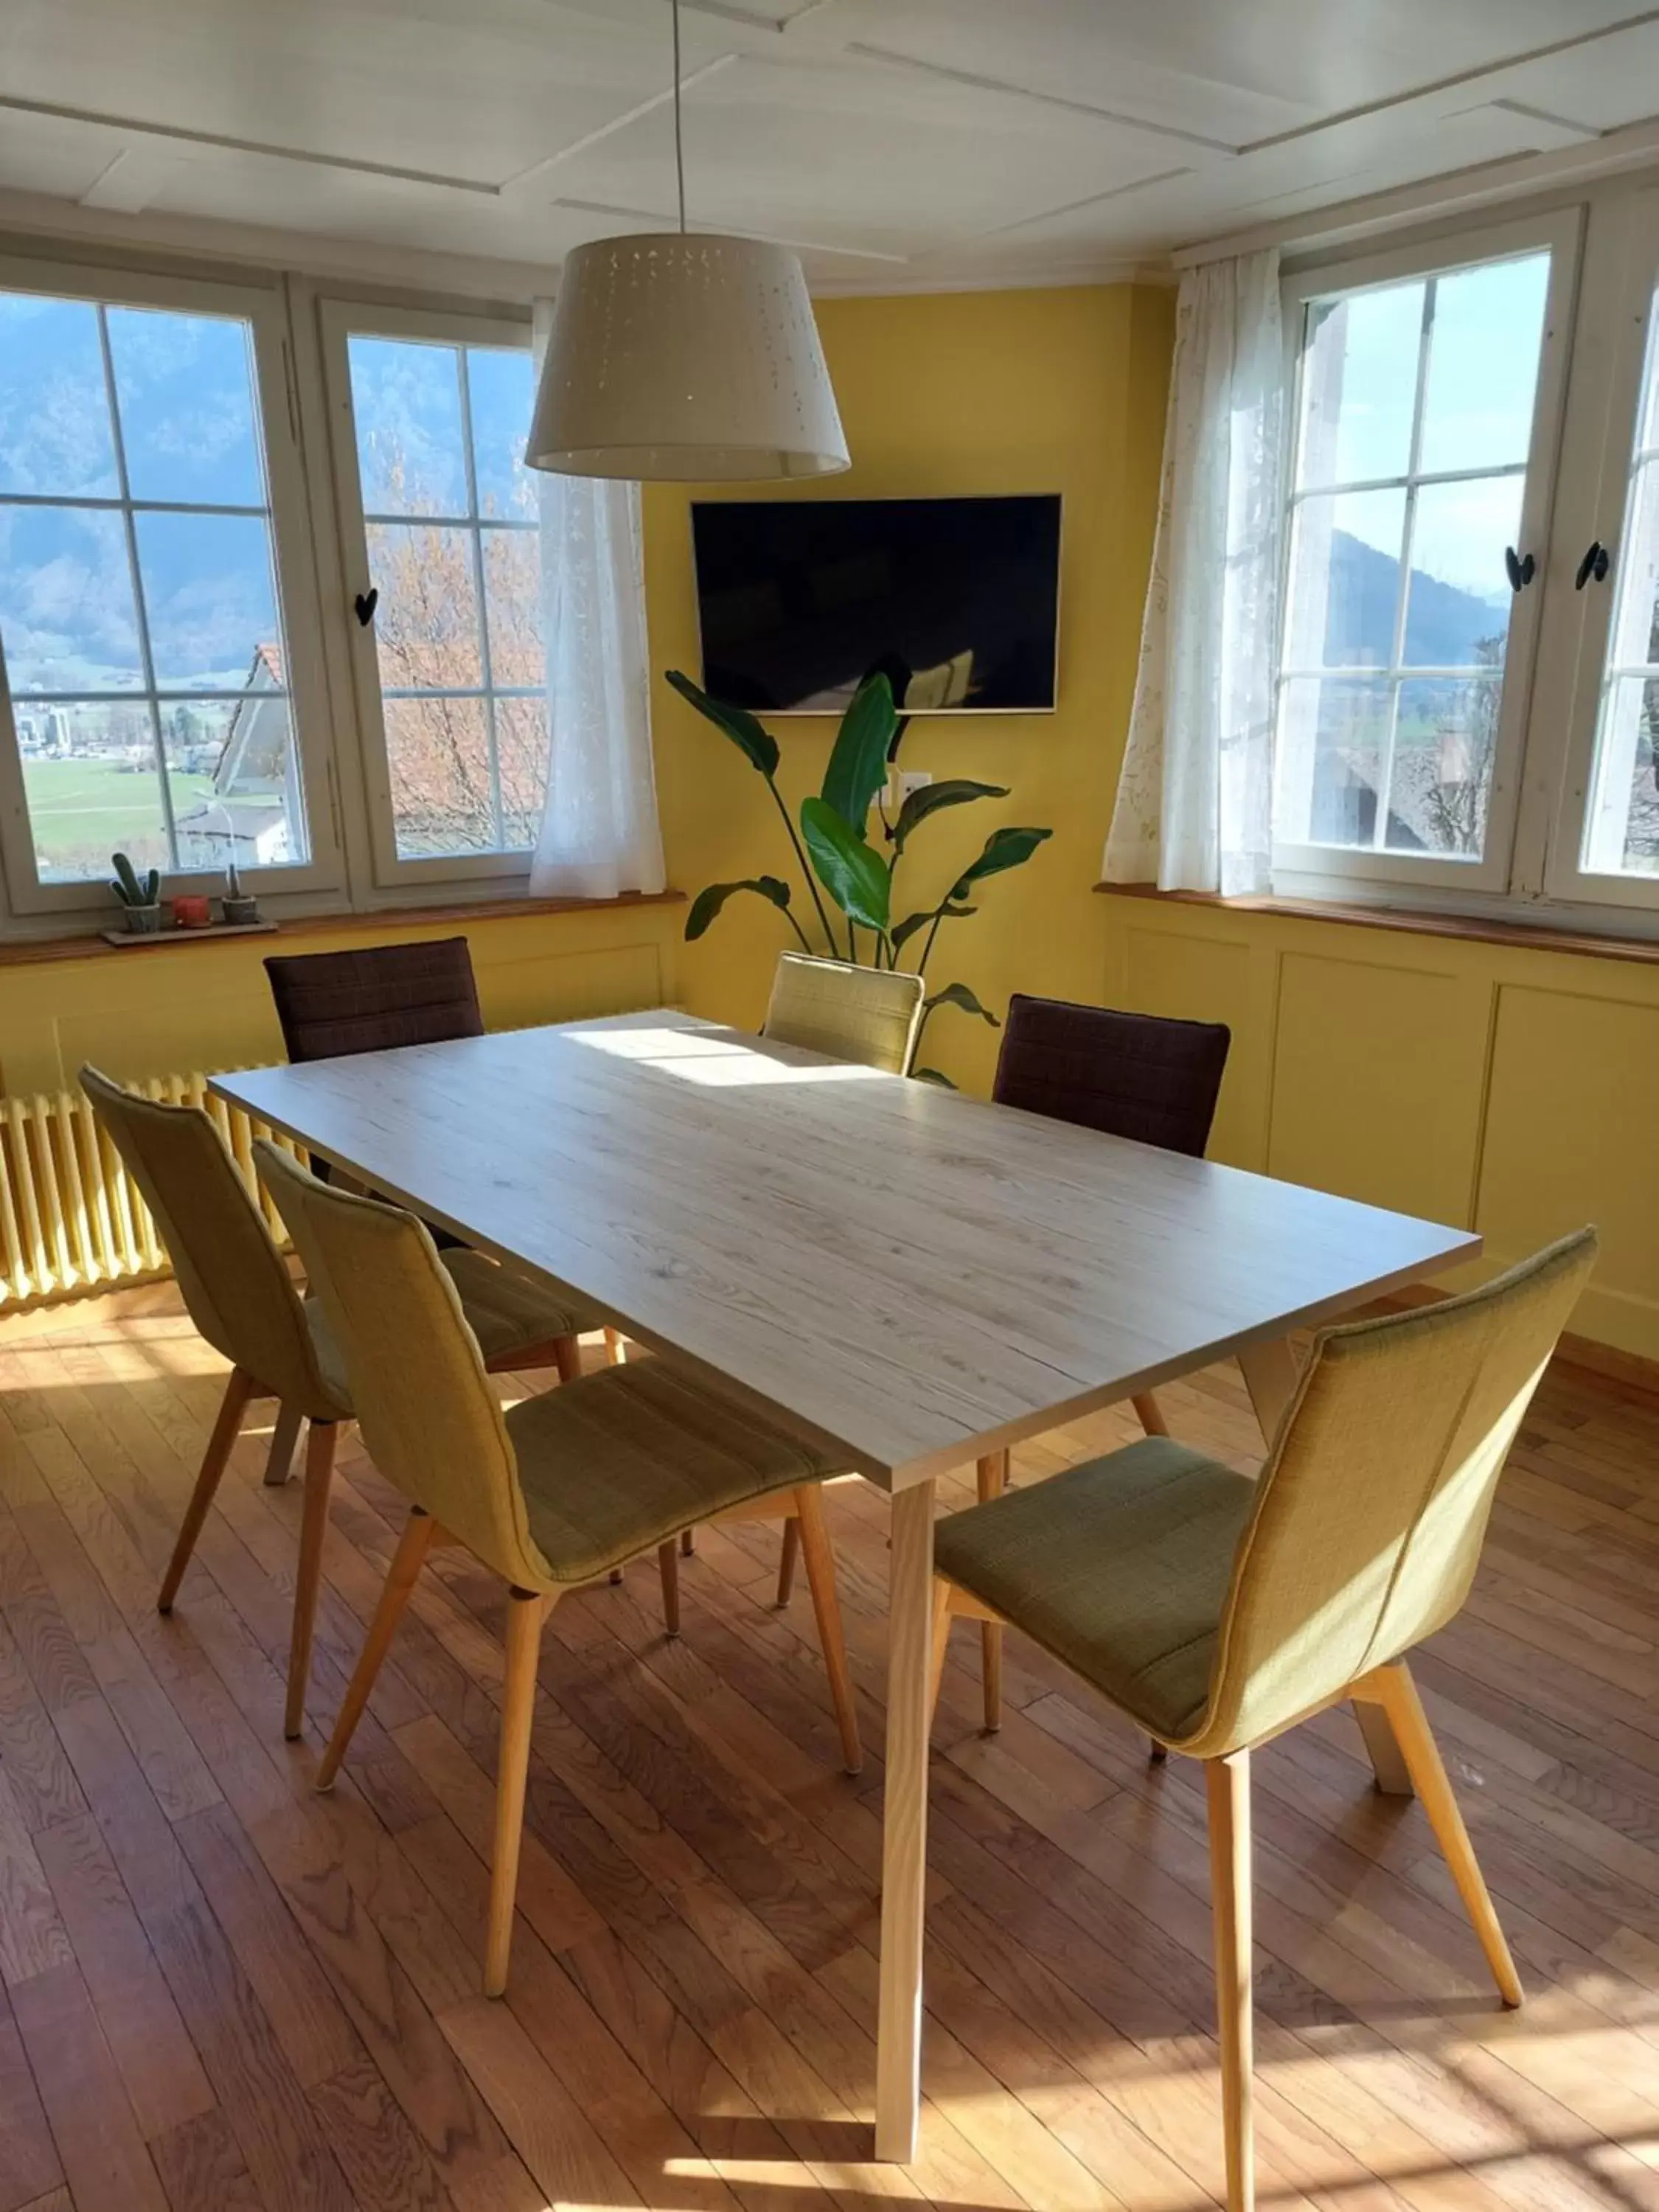 Living room, Dining Area in BnB Elsenerhaus